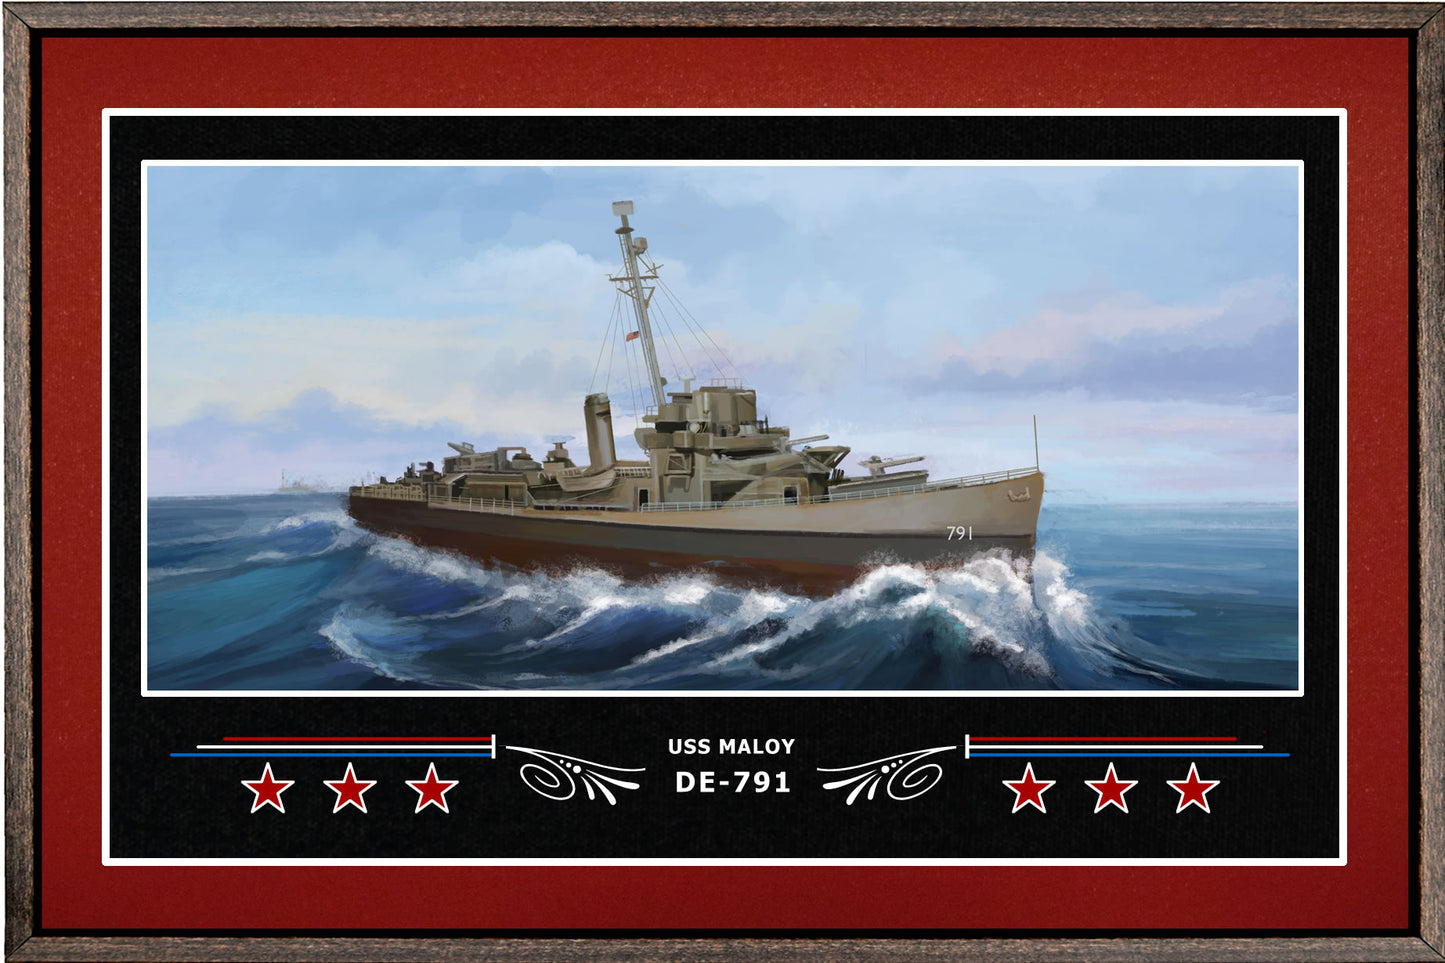 USS MALOY DE 791 BOX FRAMED CANVAS ART BURGUNDY